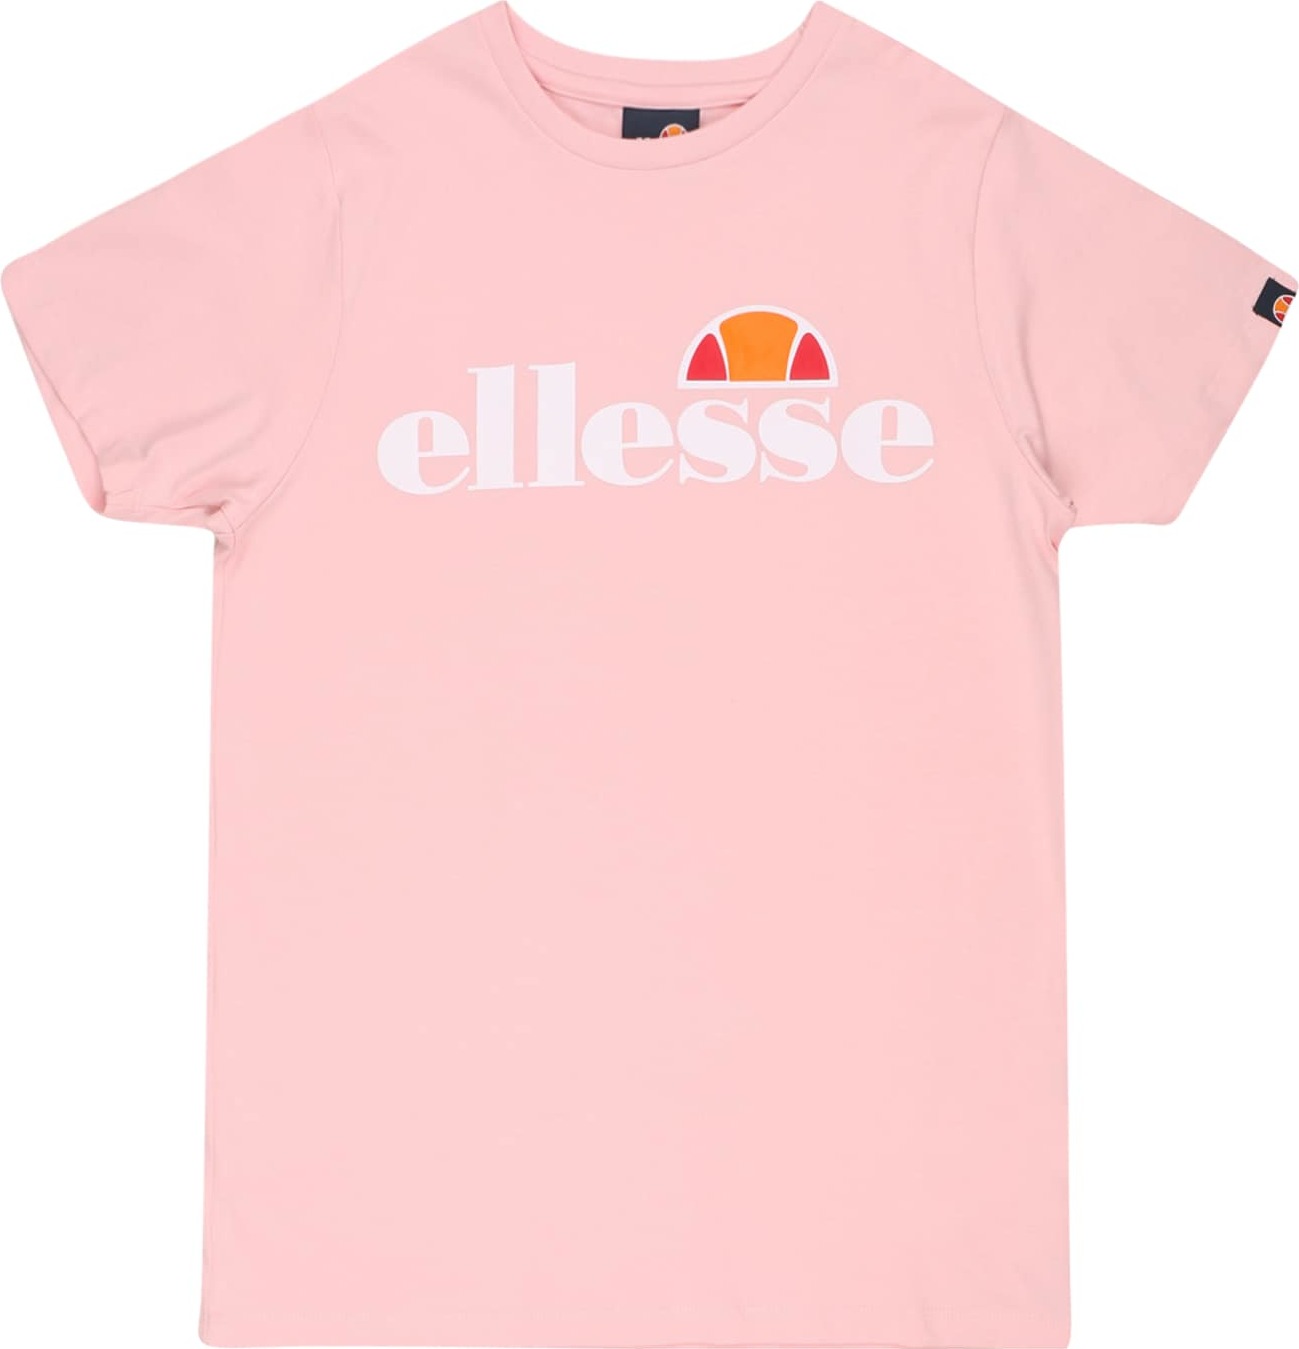 Tričko 'Jena' Ellesse korálová / růžová / grenadina / bílá